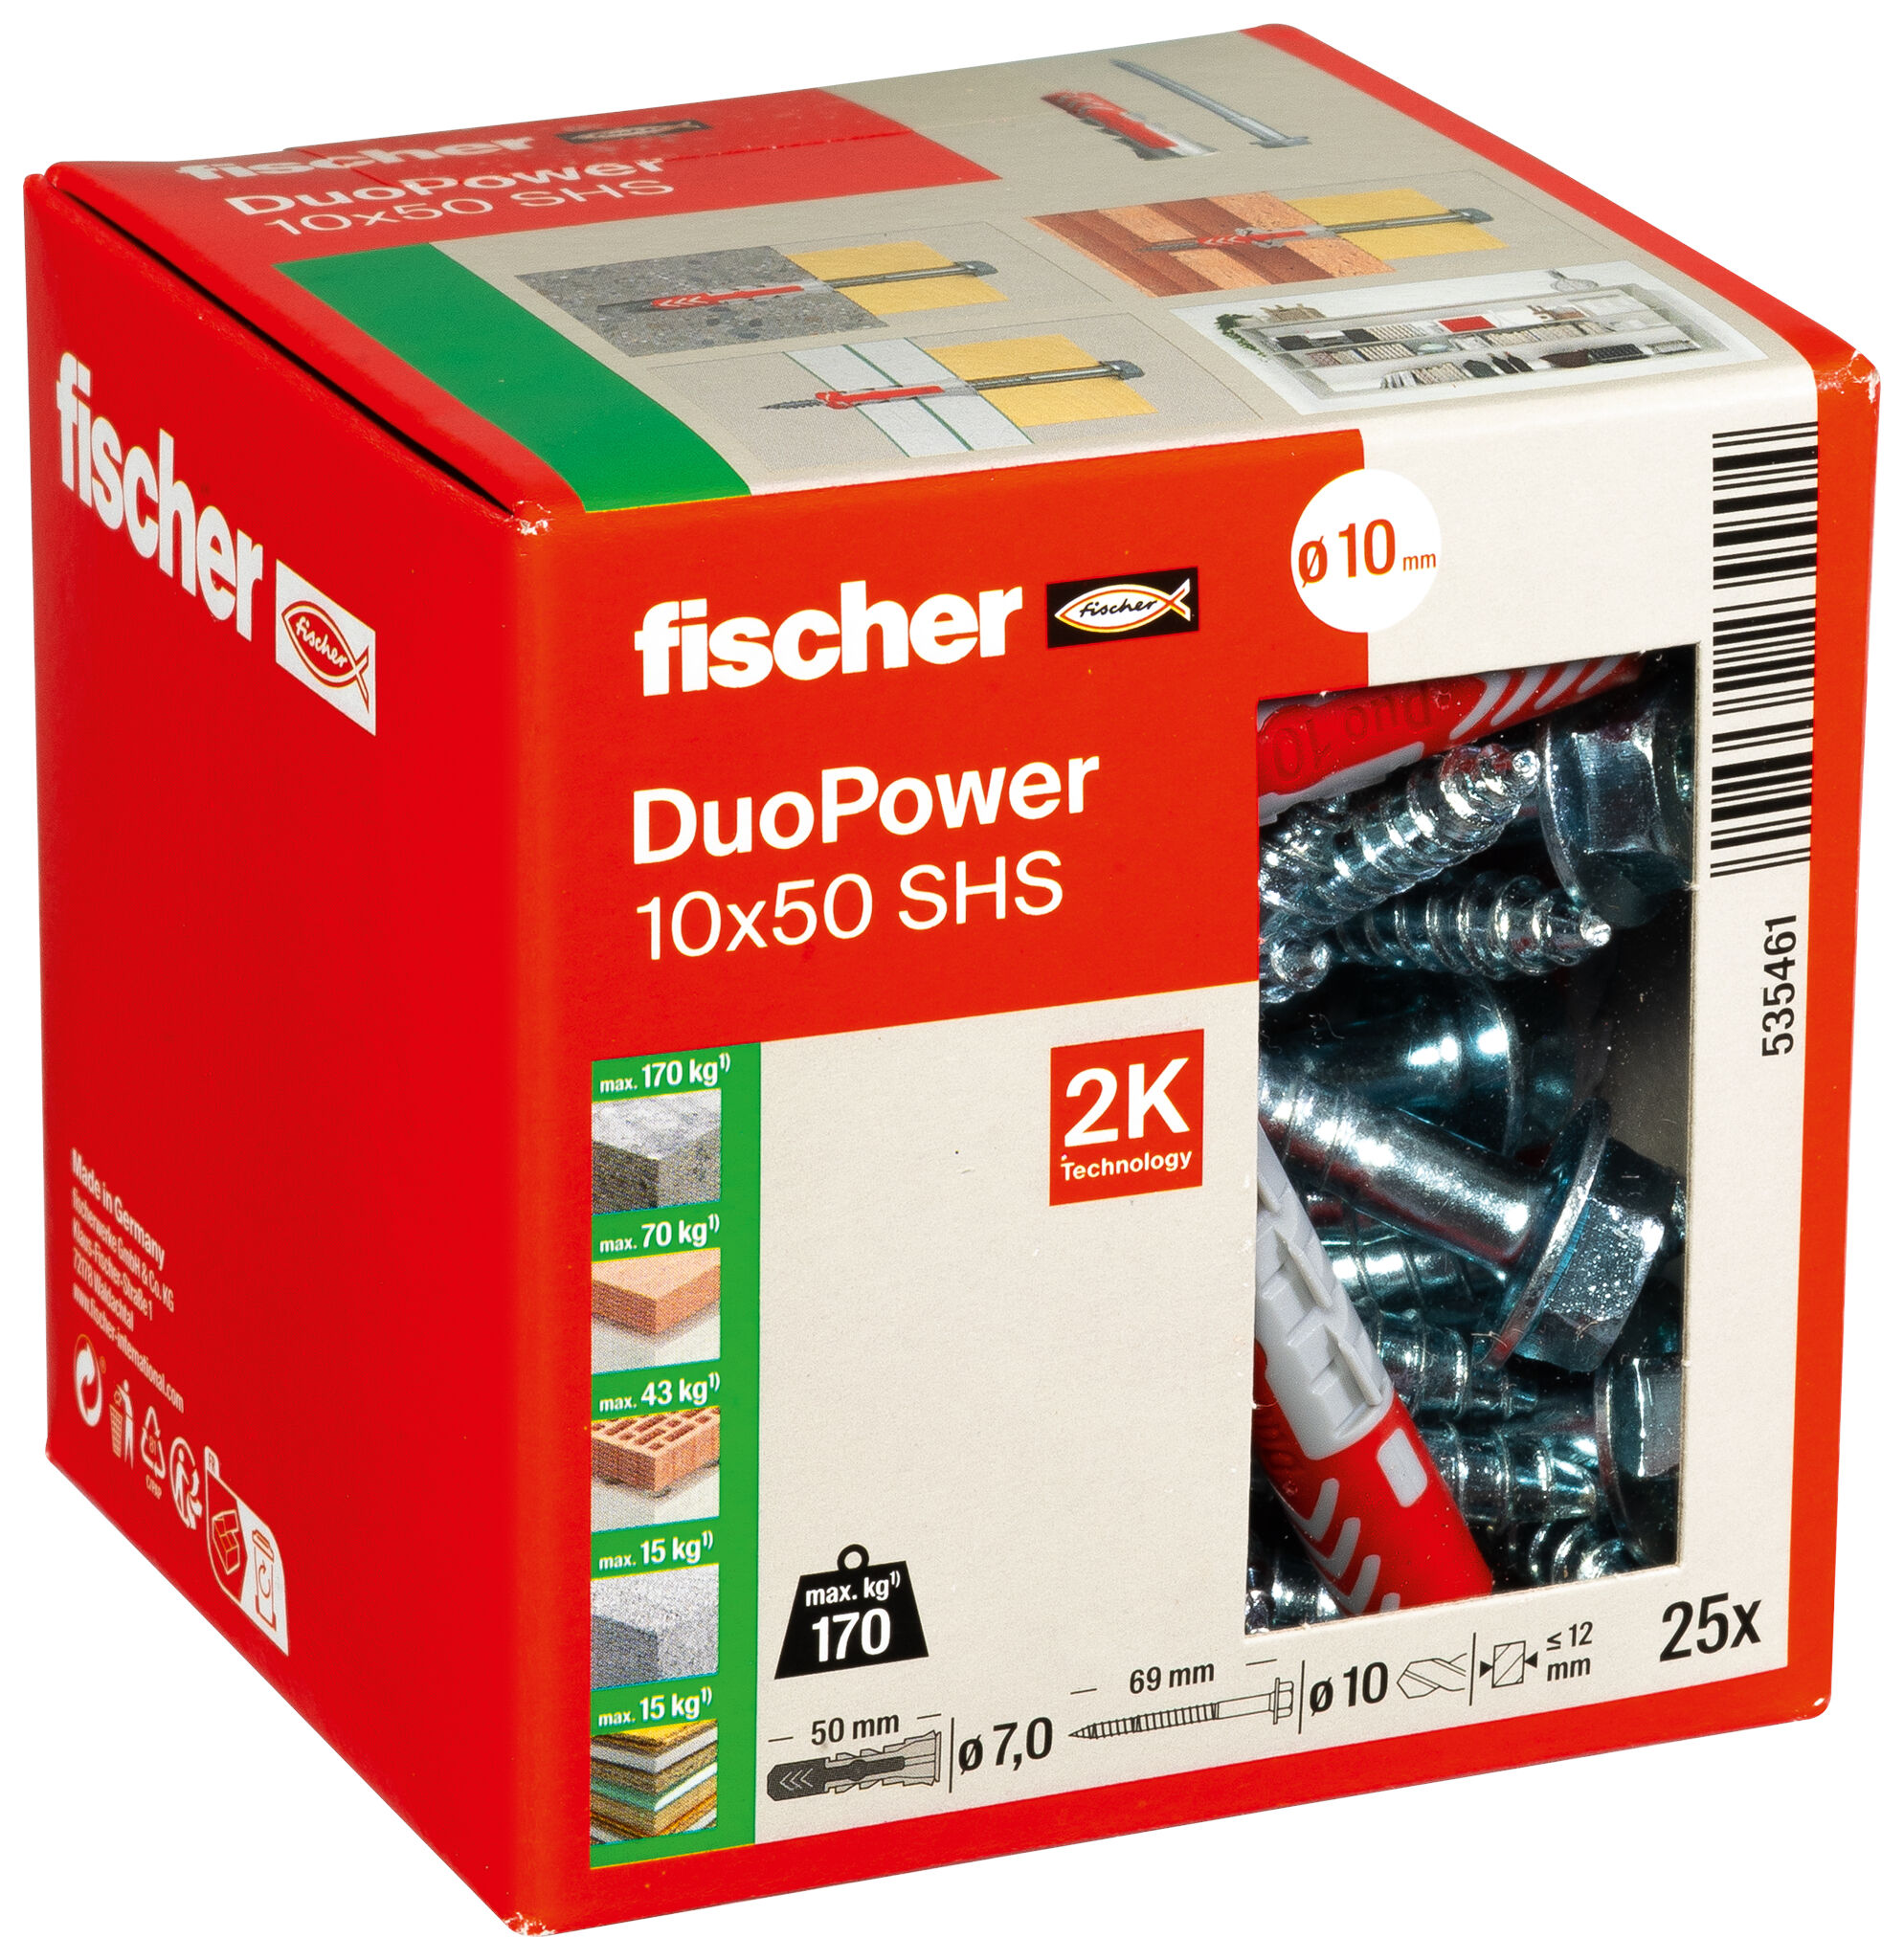 fischer DuoPower 10 x 50 S with safety screw